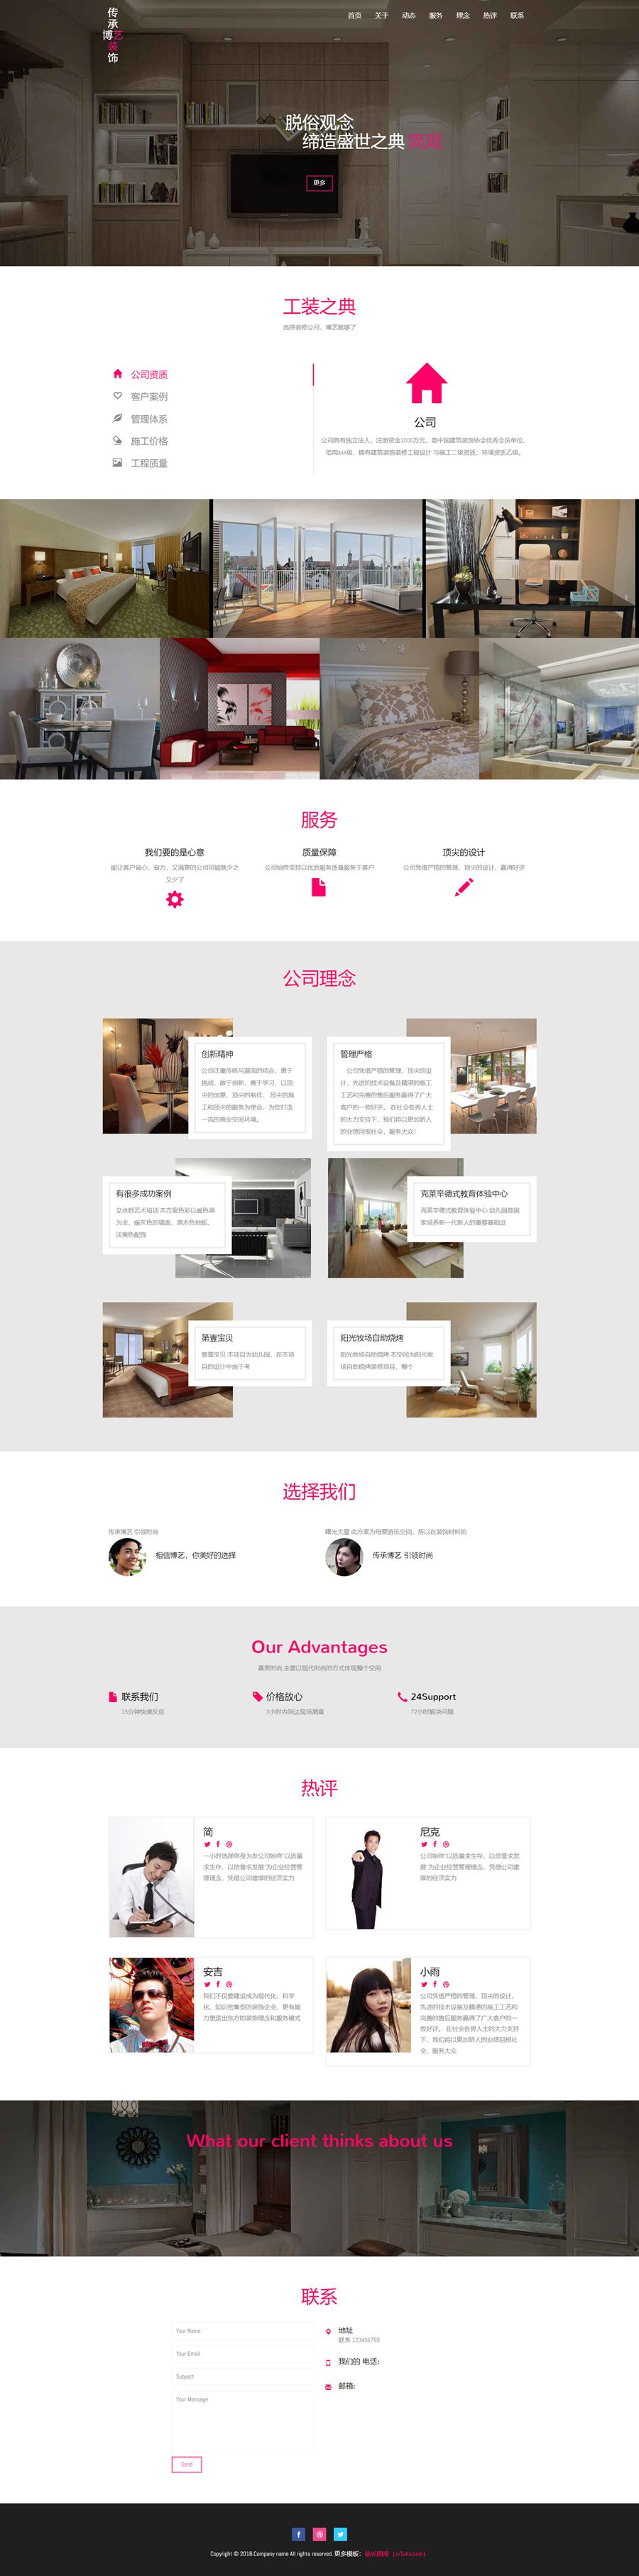 html5裝飾行業公司介紹響應式單頁動畫模板